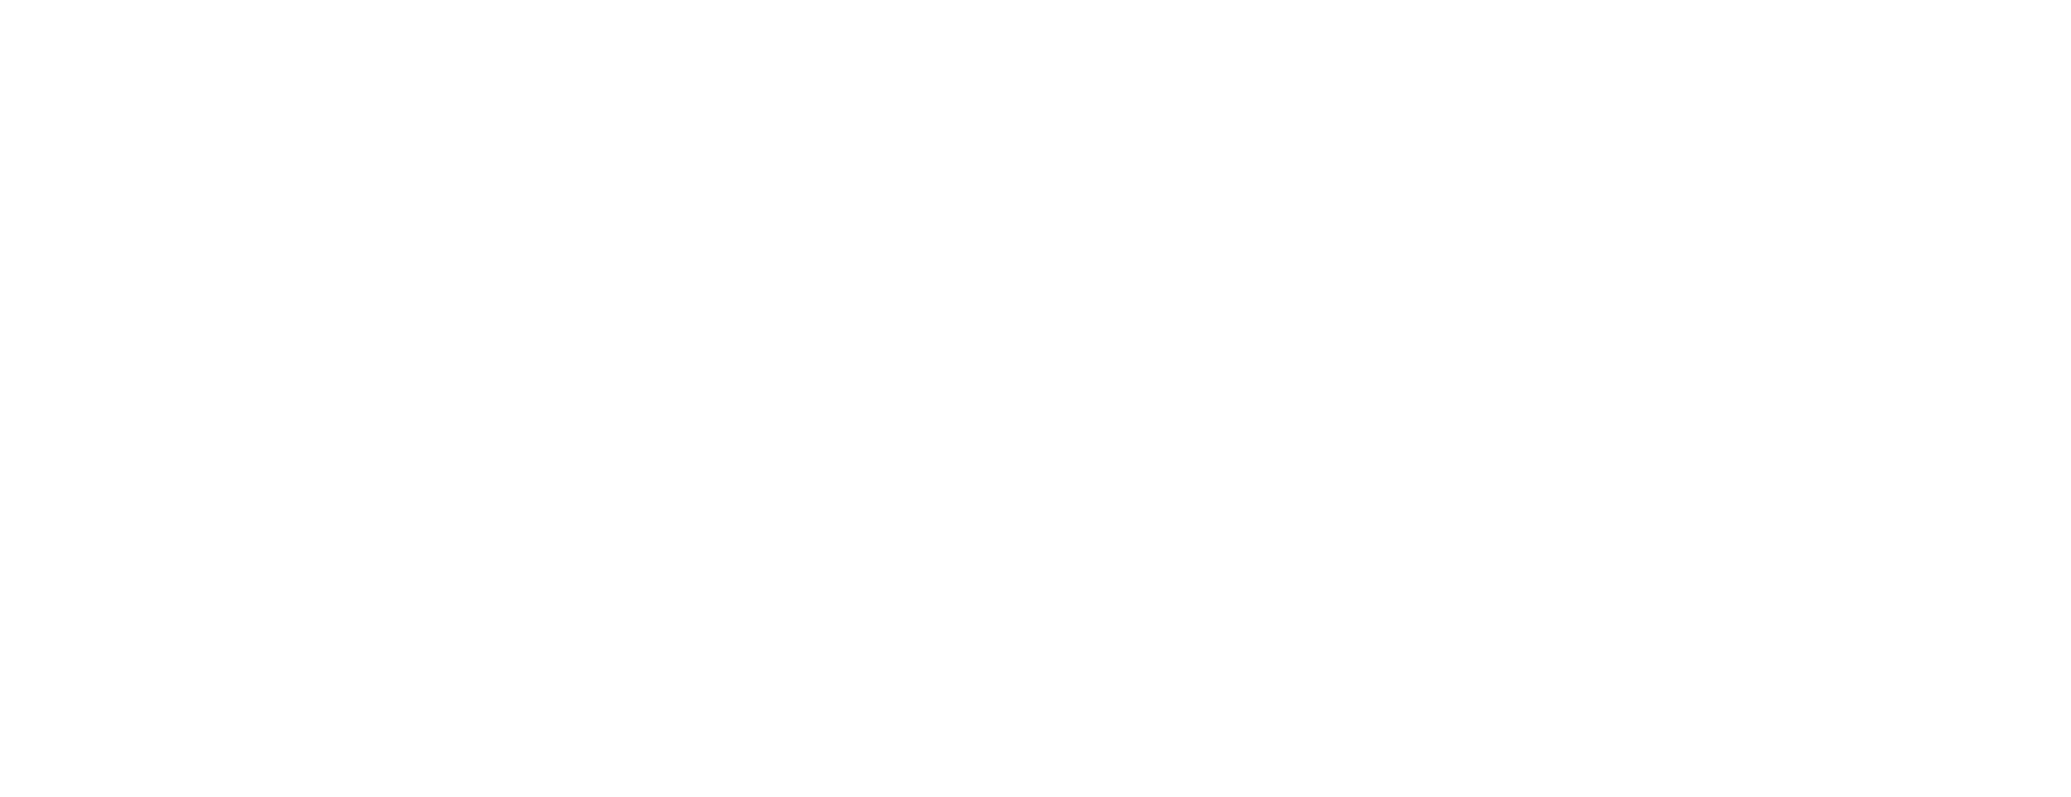 Attack Creative